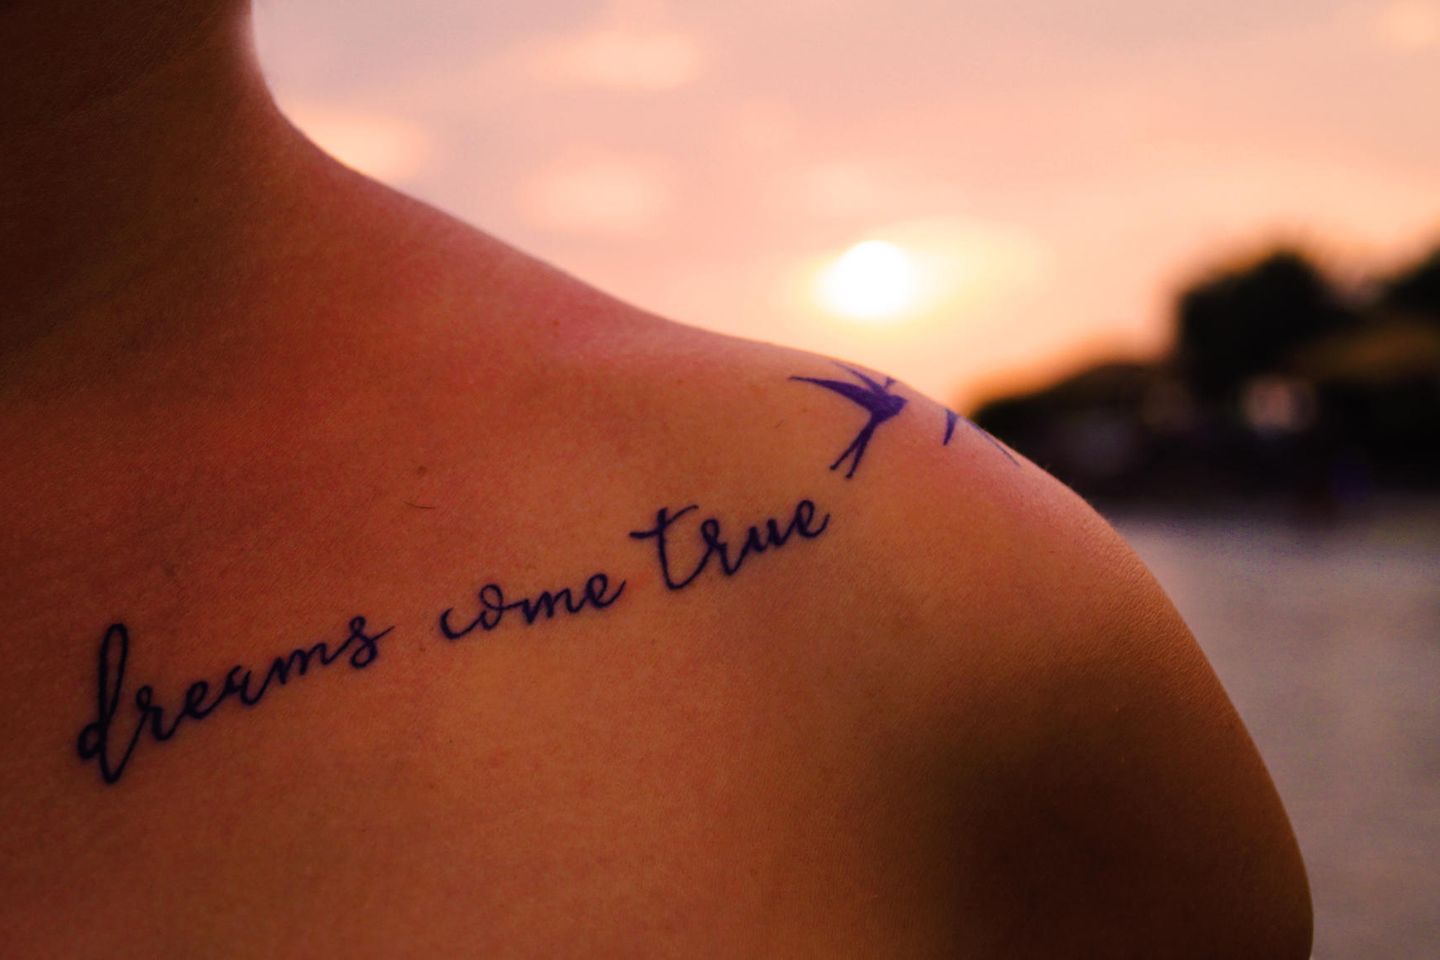 Mann und frau freundschafts tattoos Freundschaft: Wie